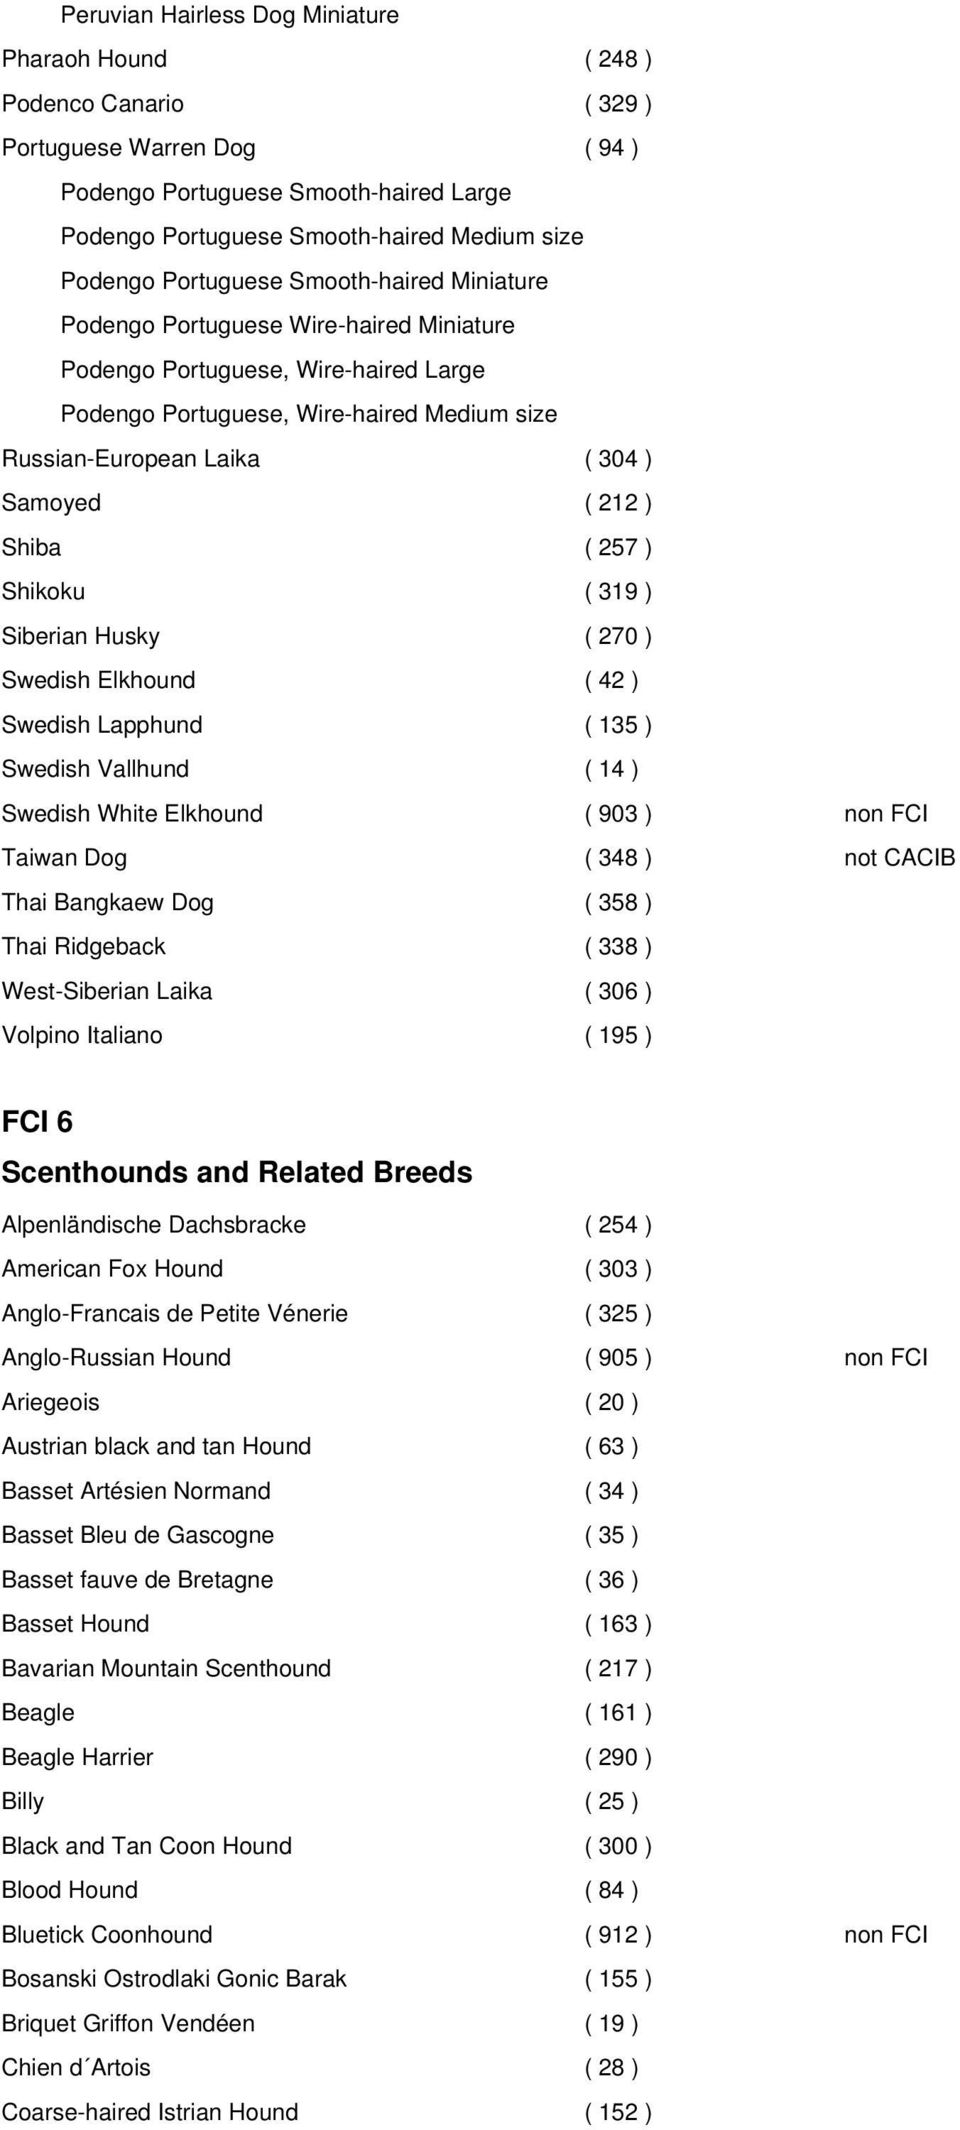 212 ) Shiba ( 257 ) Shikoku ( 319 ) Siberian Husky ( 270 ) Swedish Elkhound ( 42 ) Swedish Lapphund ( 135 ) Swedish Vallhund ( 14 ) Swedish White Elkhound ( 903 ) non FCI Taiwan Dog ( 348 ) not CACIB